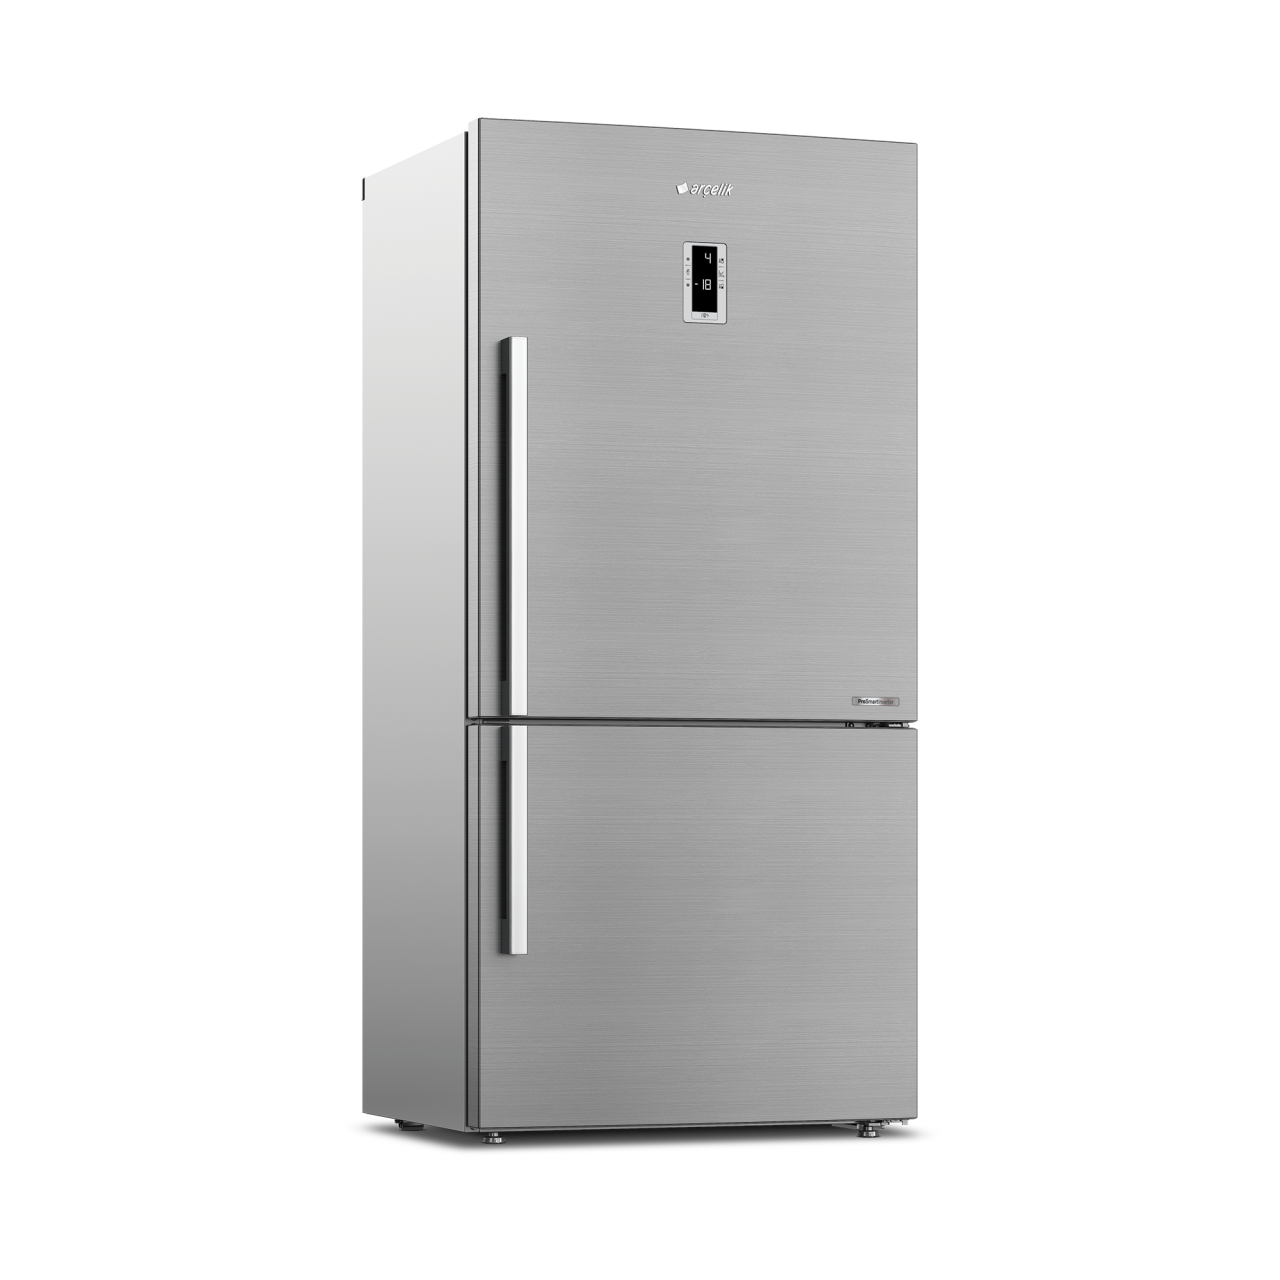 Arçelik 284630 EI A++ Kombi No Frost Buzdolabı